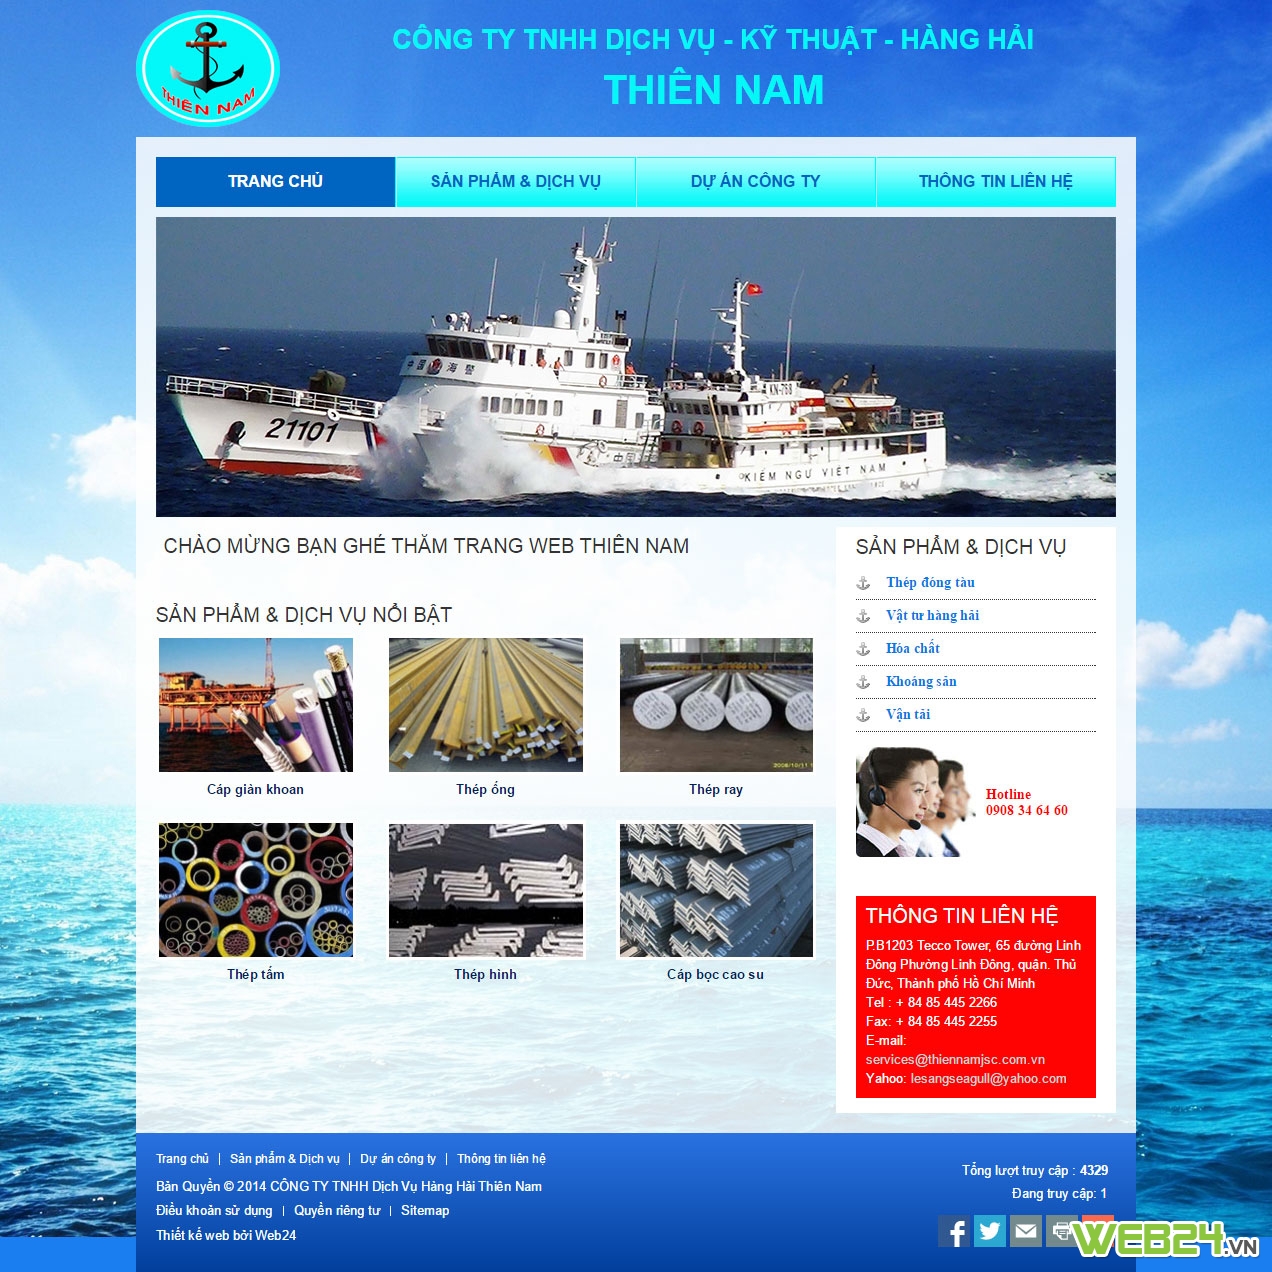 Thiết  kế web Công ty Dịch vụ - Kỹ thuật - Hàng hải Thiên Nam